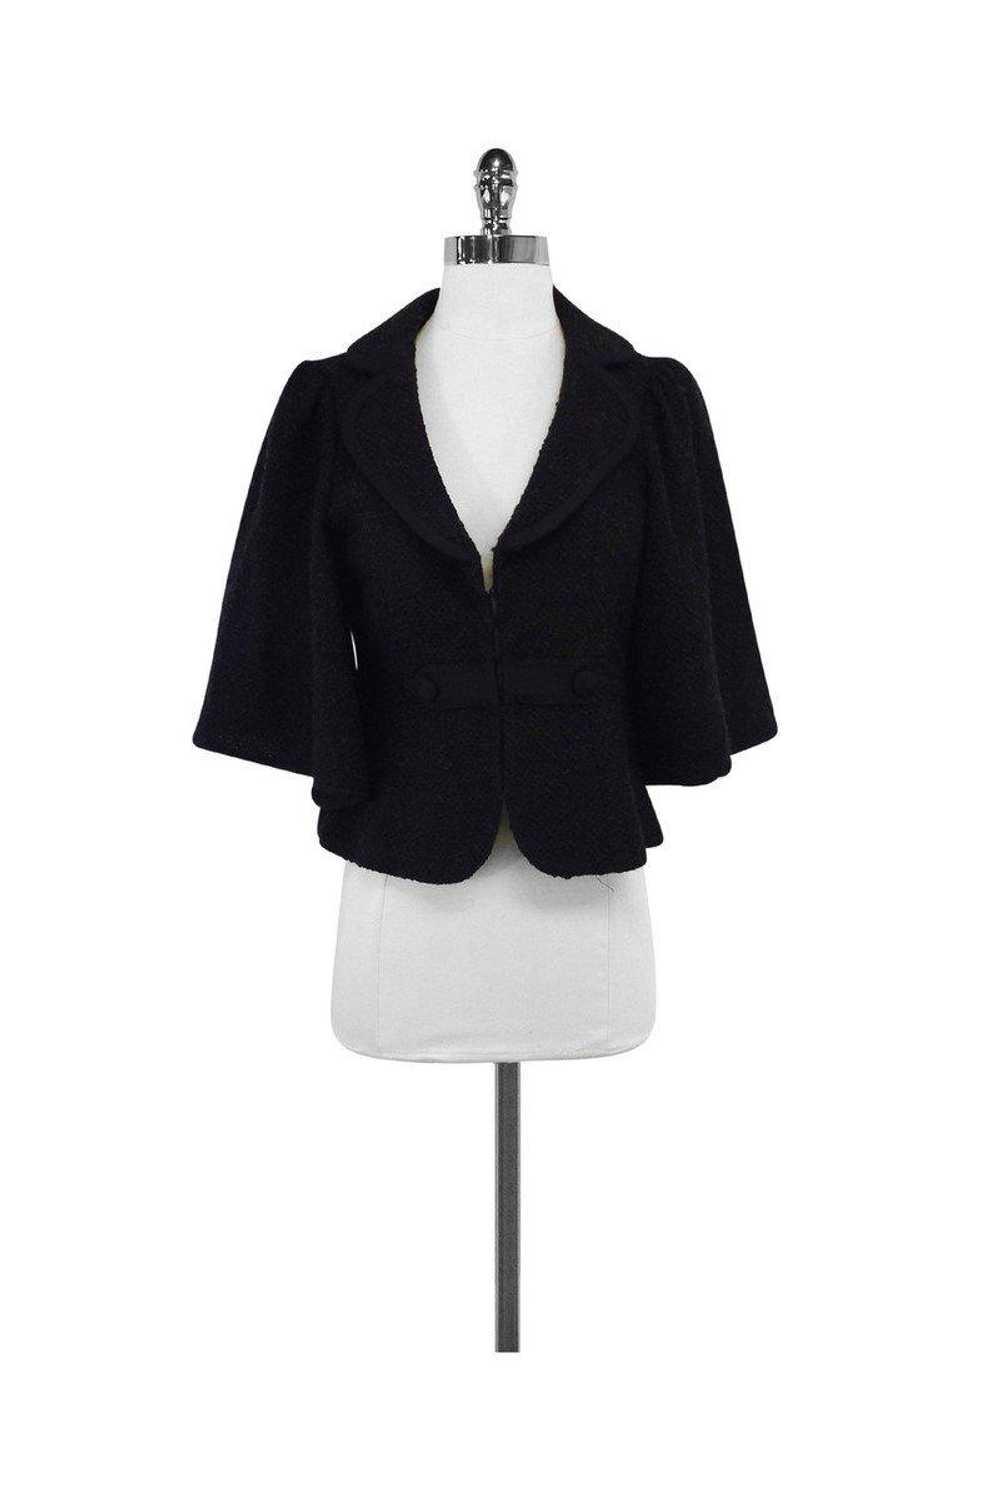 Nanette Lepore - Brown Textured Suit Jacket Sz M - image 1